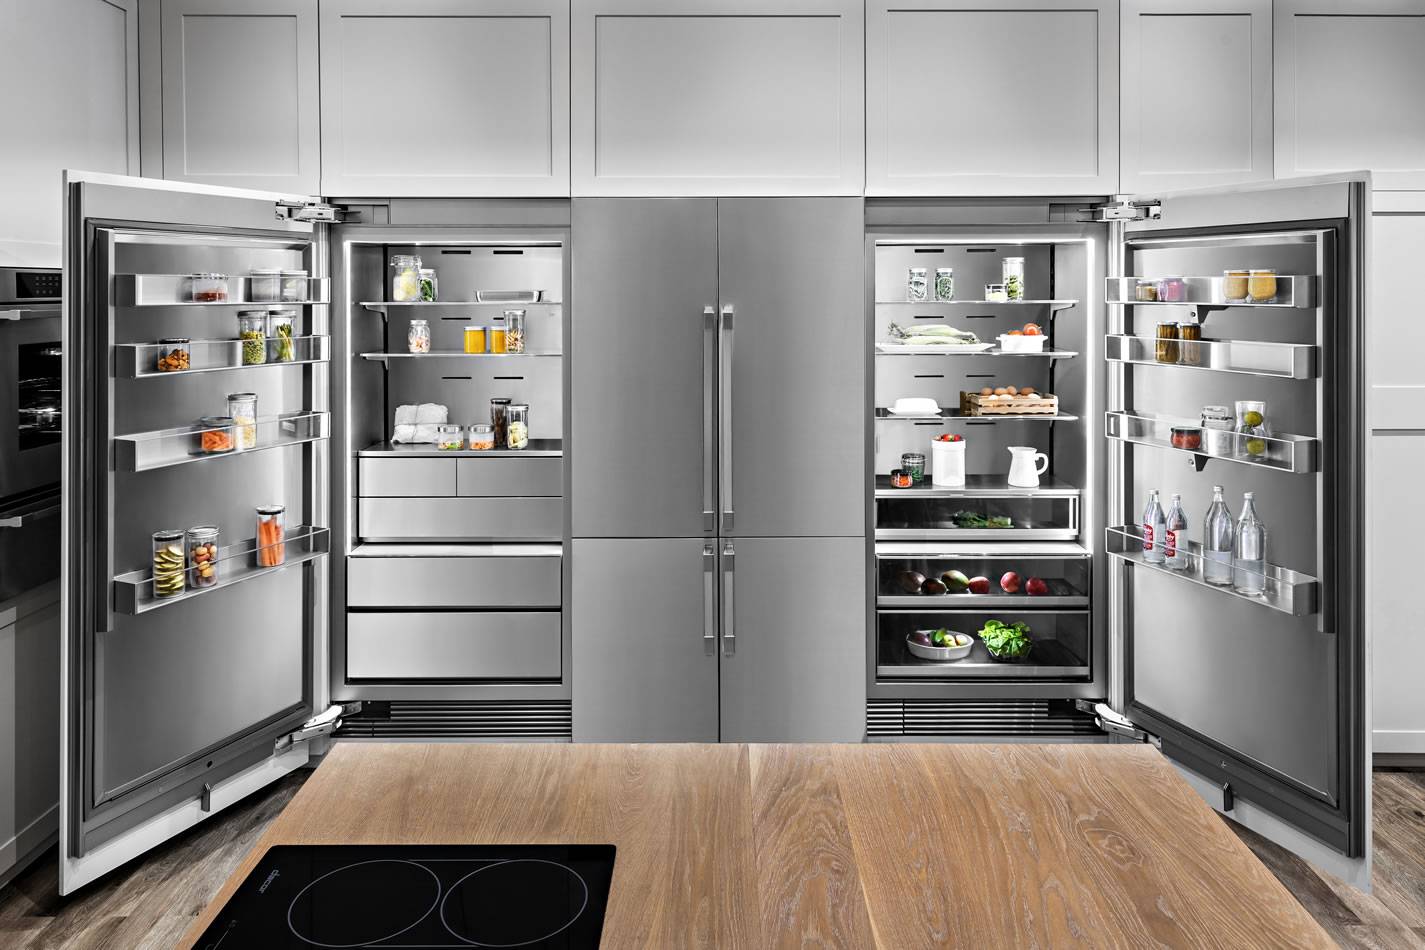 Класс электропотребления холодильника: что это такое и какой лучше